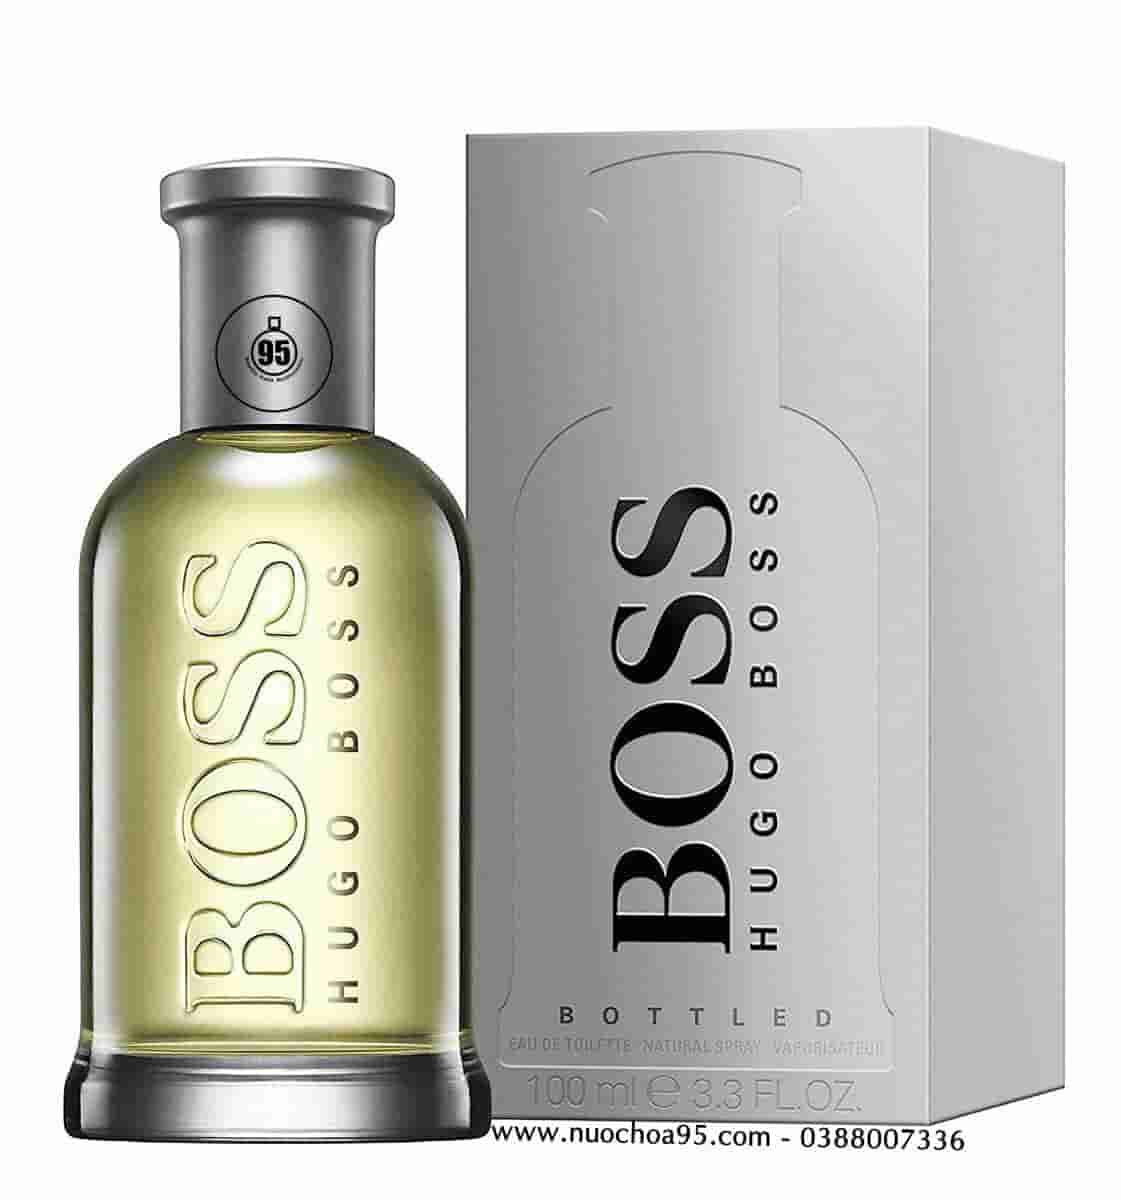 Nước hoa Hugo Boss Bottled EDT